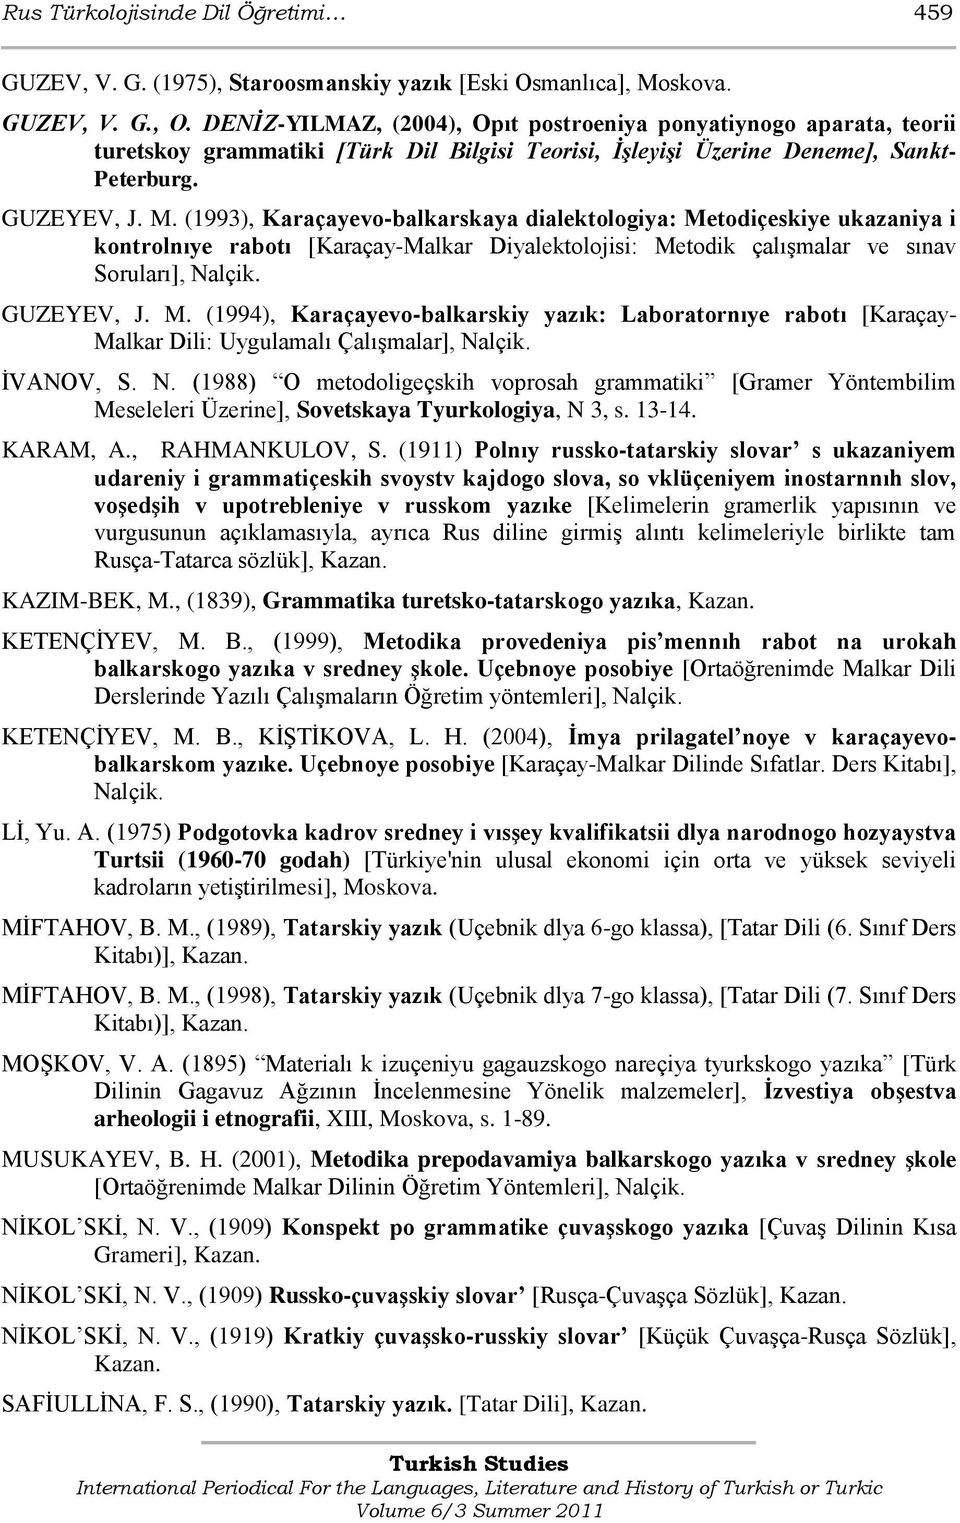 (1993), Karaçayevo-balkarskaya dialektologiya: Metodiçeskiye ukazaniya i kontrolnıye rabotı [Karaçay-Malkar Diyalektolojisi: Metodik çalıģmalar ve sınav Soruları], Nalçik. GUZEYEV, J. M. (1994), Karaçayevo-balkarskiy yazık: Laboratornıye rabotı [Karaçay- Malkar Dili: Uygulamalı ÇalıĢmalar], Nalçik.